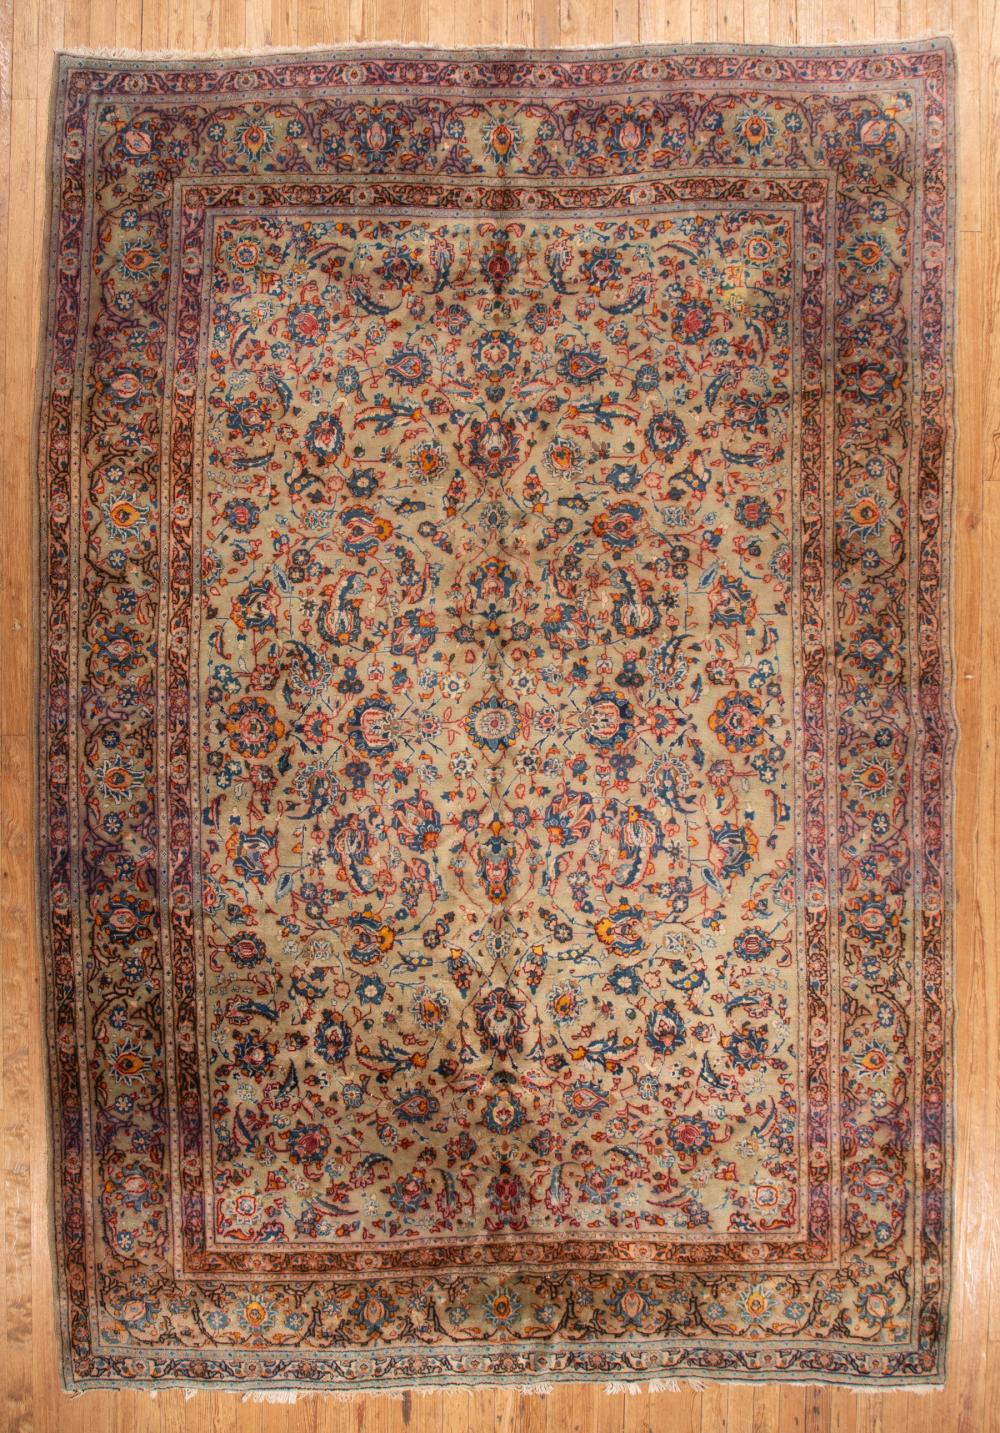 PERSIAN CARPETPersian Carpet, light